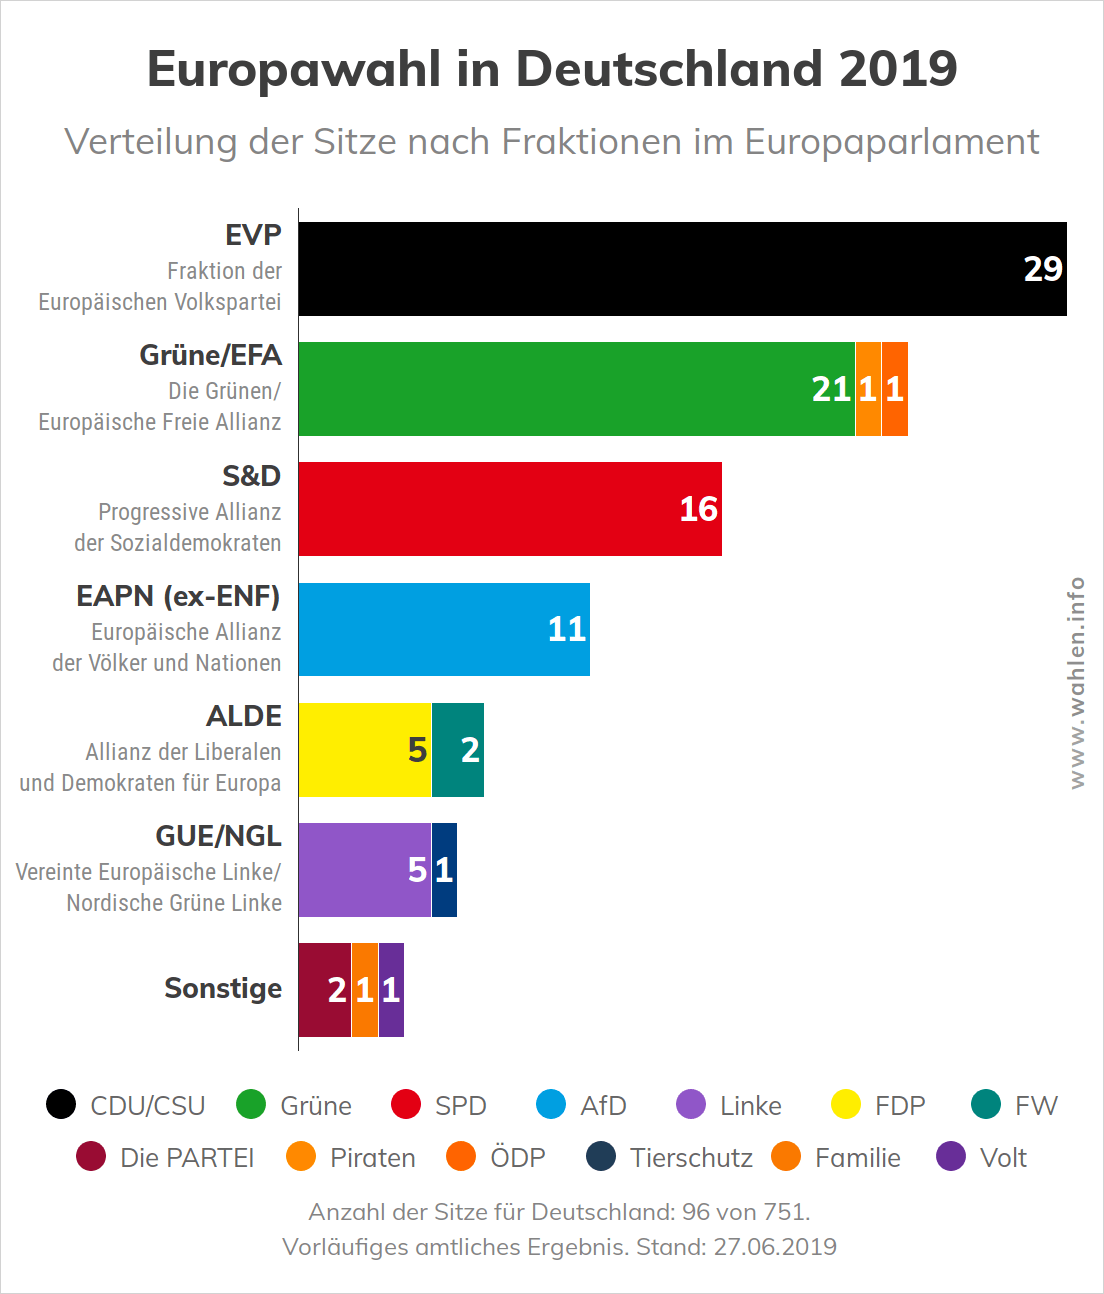 Europawahl in Deutschland - Sitzverteilung der Parteien nach Fraktionen